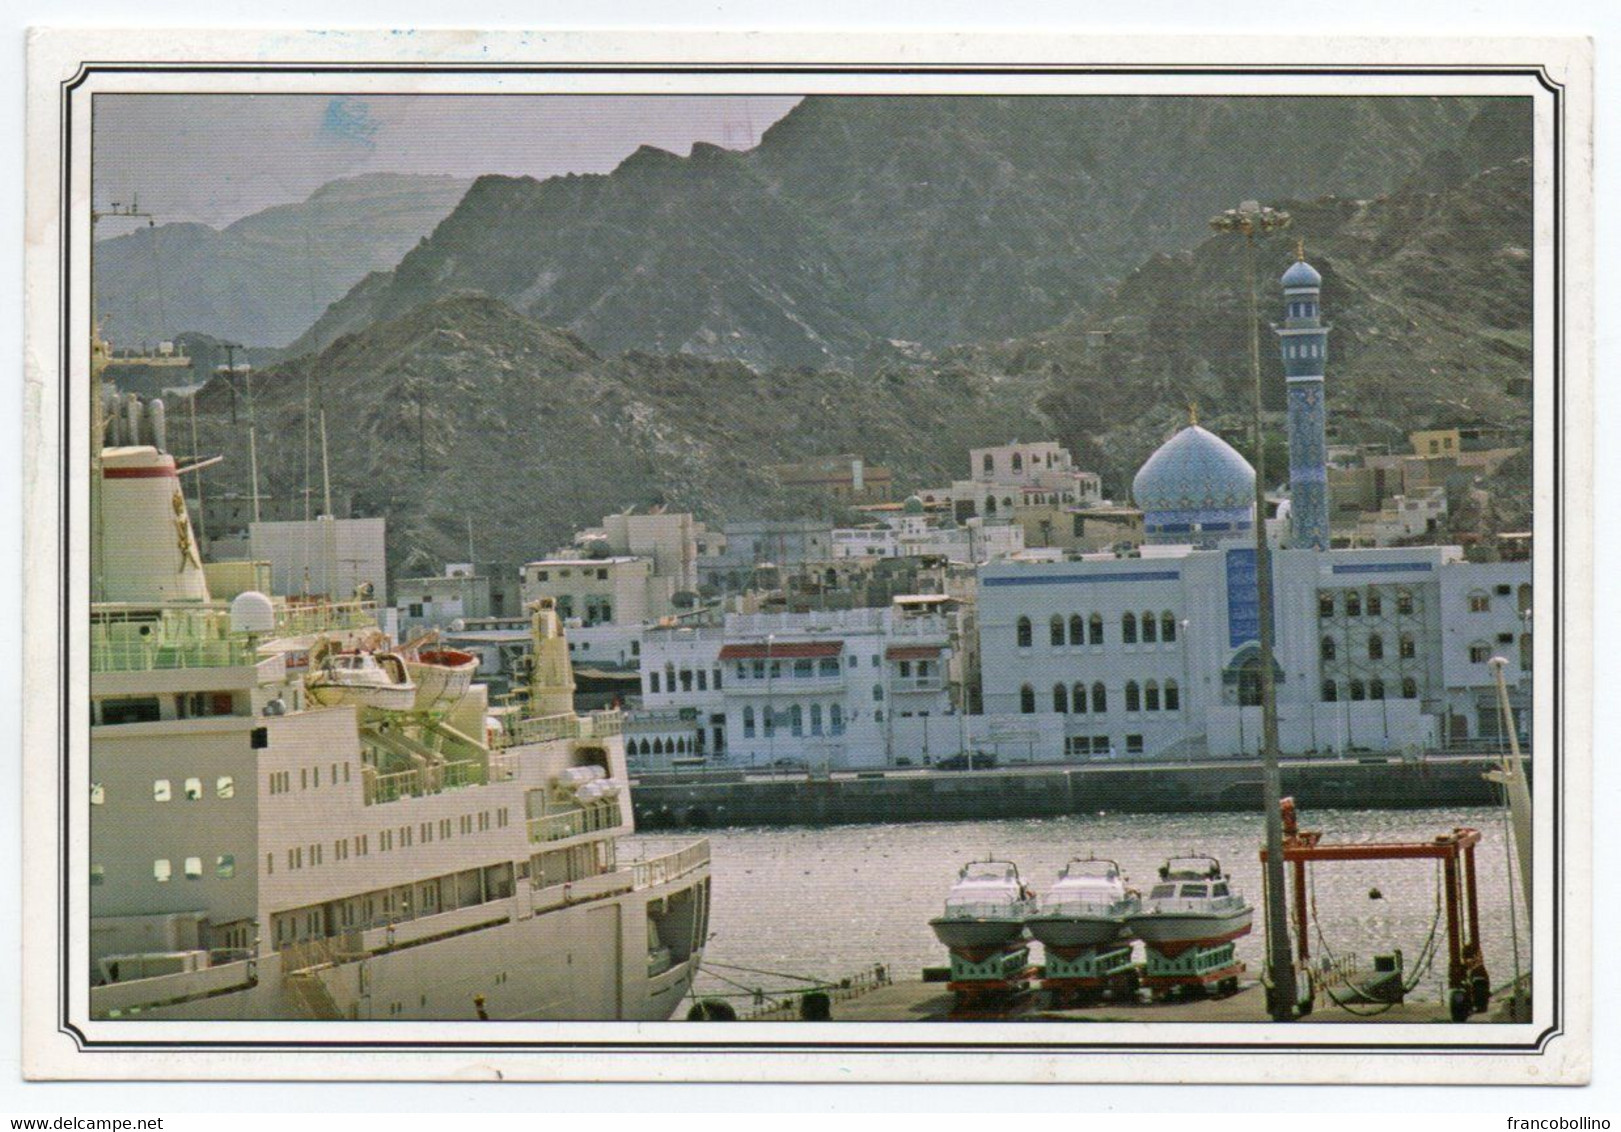 OMAN - CORNICHE IN MUSCAT / SHIP / MOSQUE - Oman